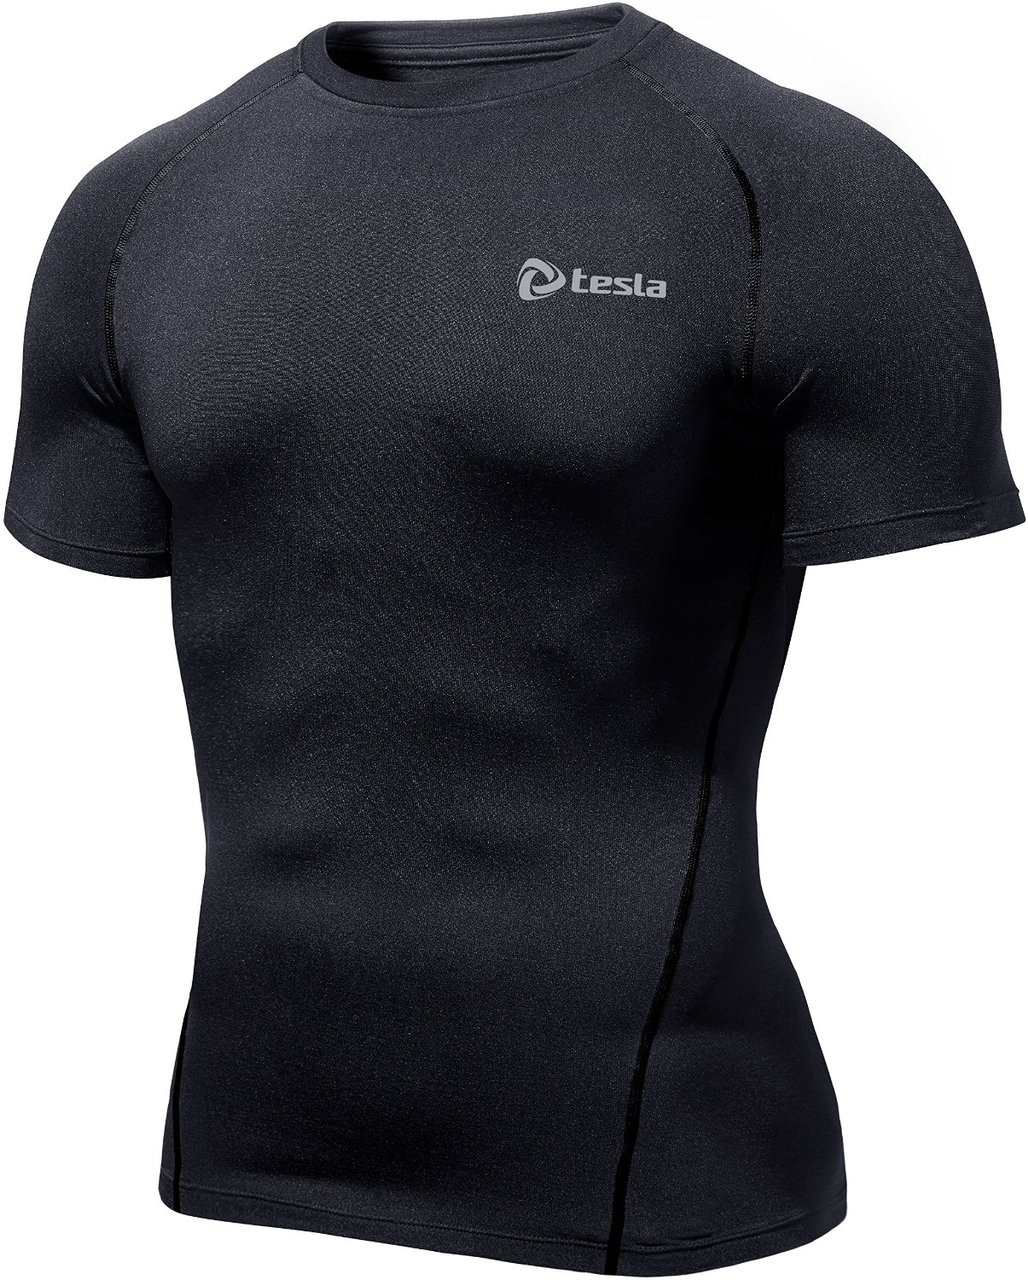 Mens Compression Black Short Sleeve Skins Gym Workout Fitness Tesla